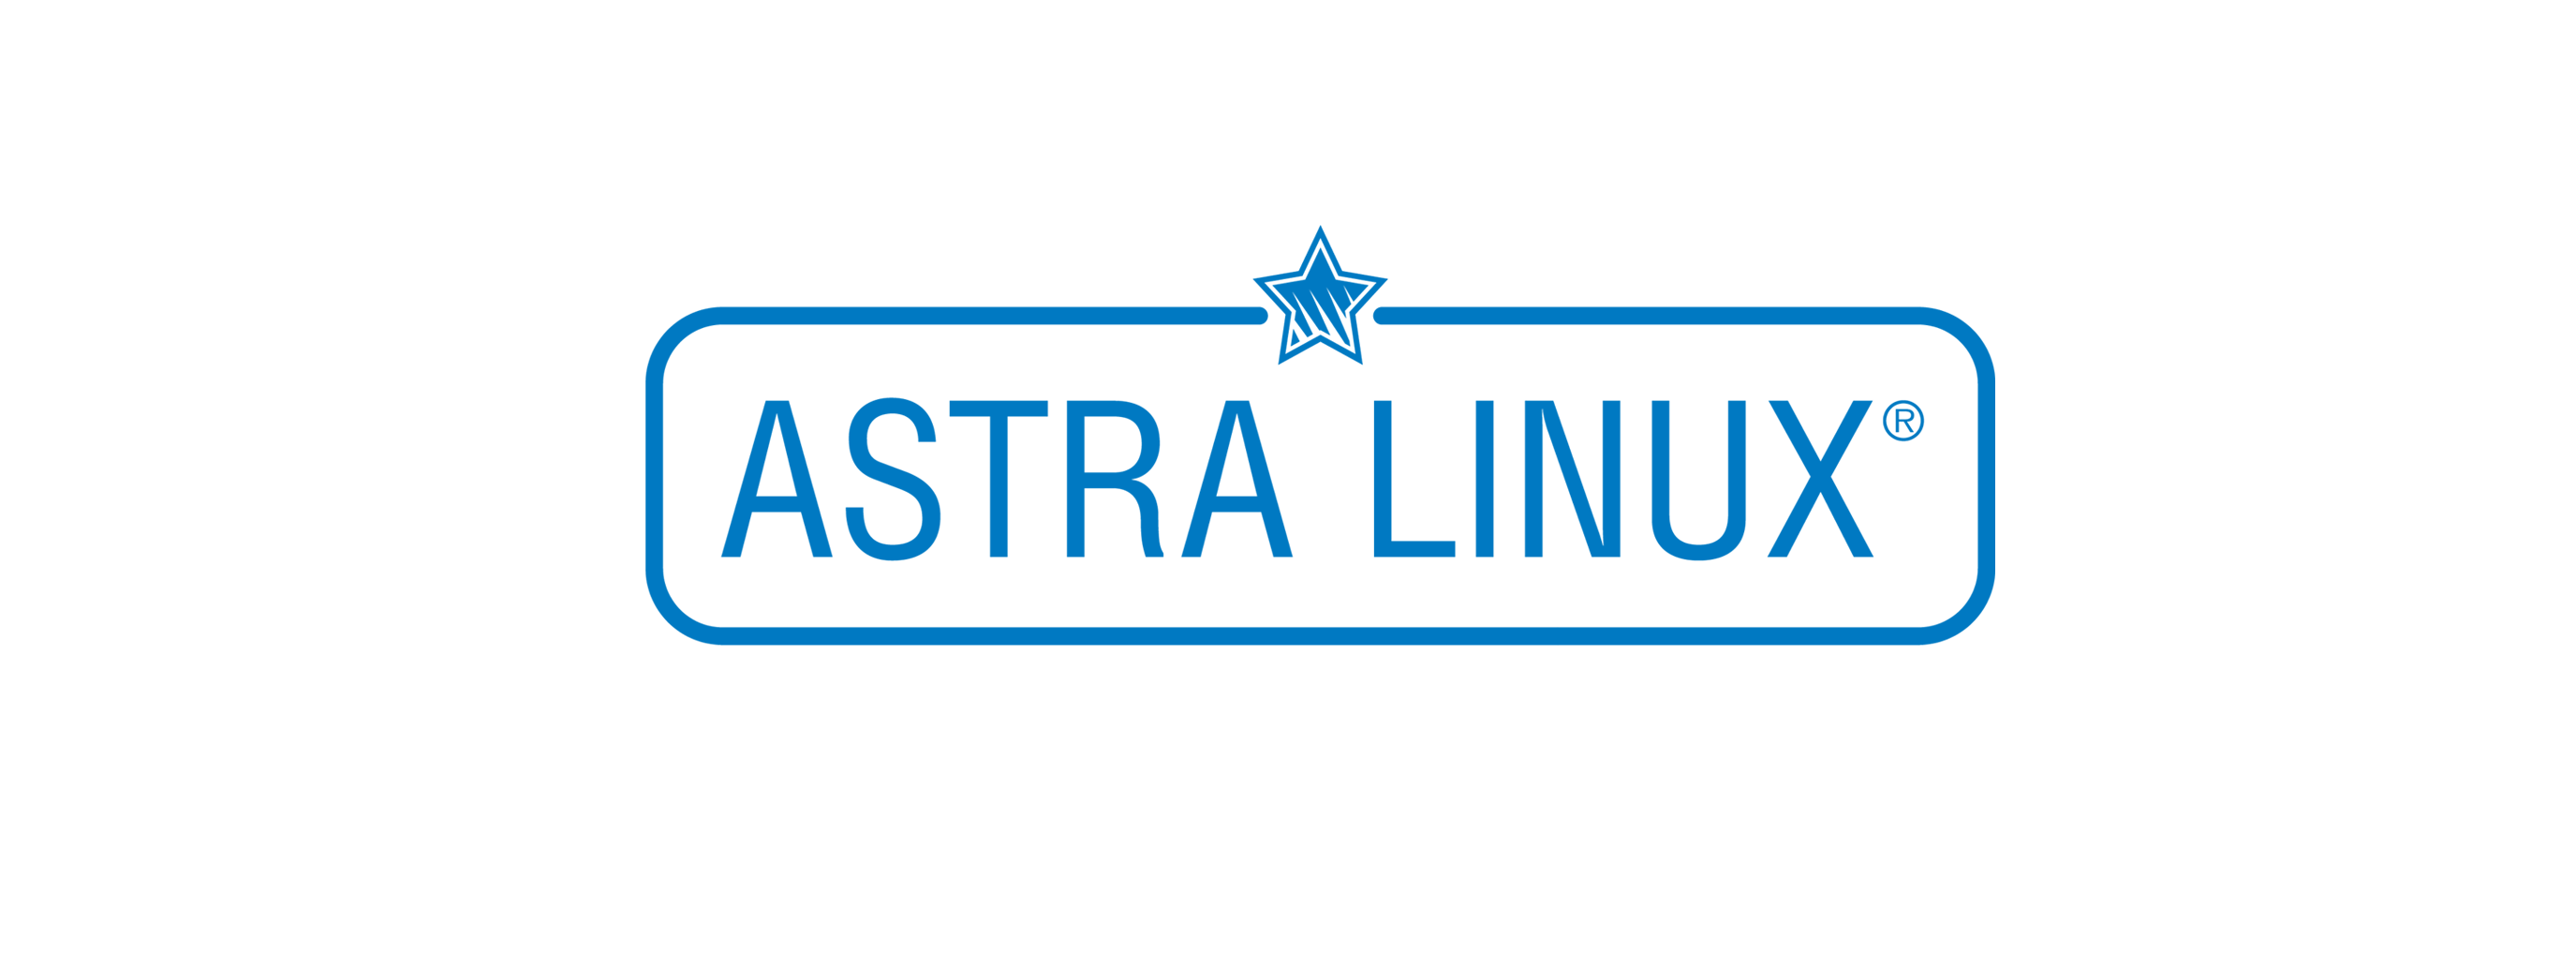 Лицензия РусБИТех Astra Linux Special Edition (очередное обновление 1.7), уровень защищенности Максимальный (Смоленск), РУСБ.10015-01 (ФСТЭК), Russian, на срок действия исключительного права базовая лицензия для сервера до 2 сокетов и неограниченного коли